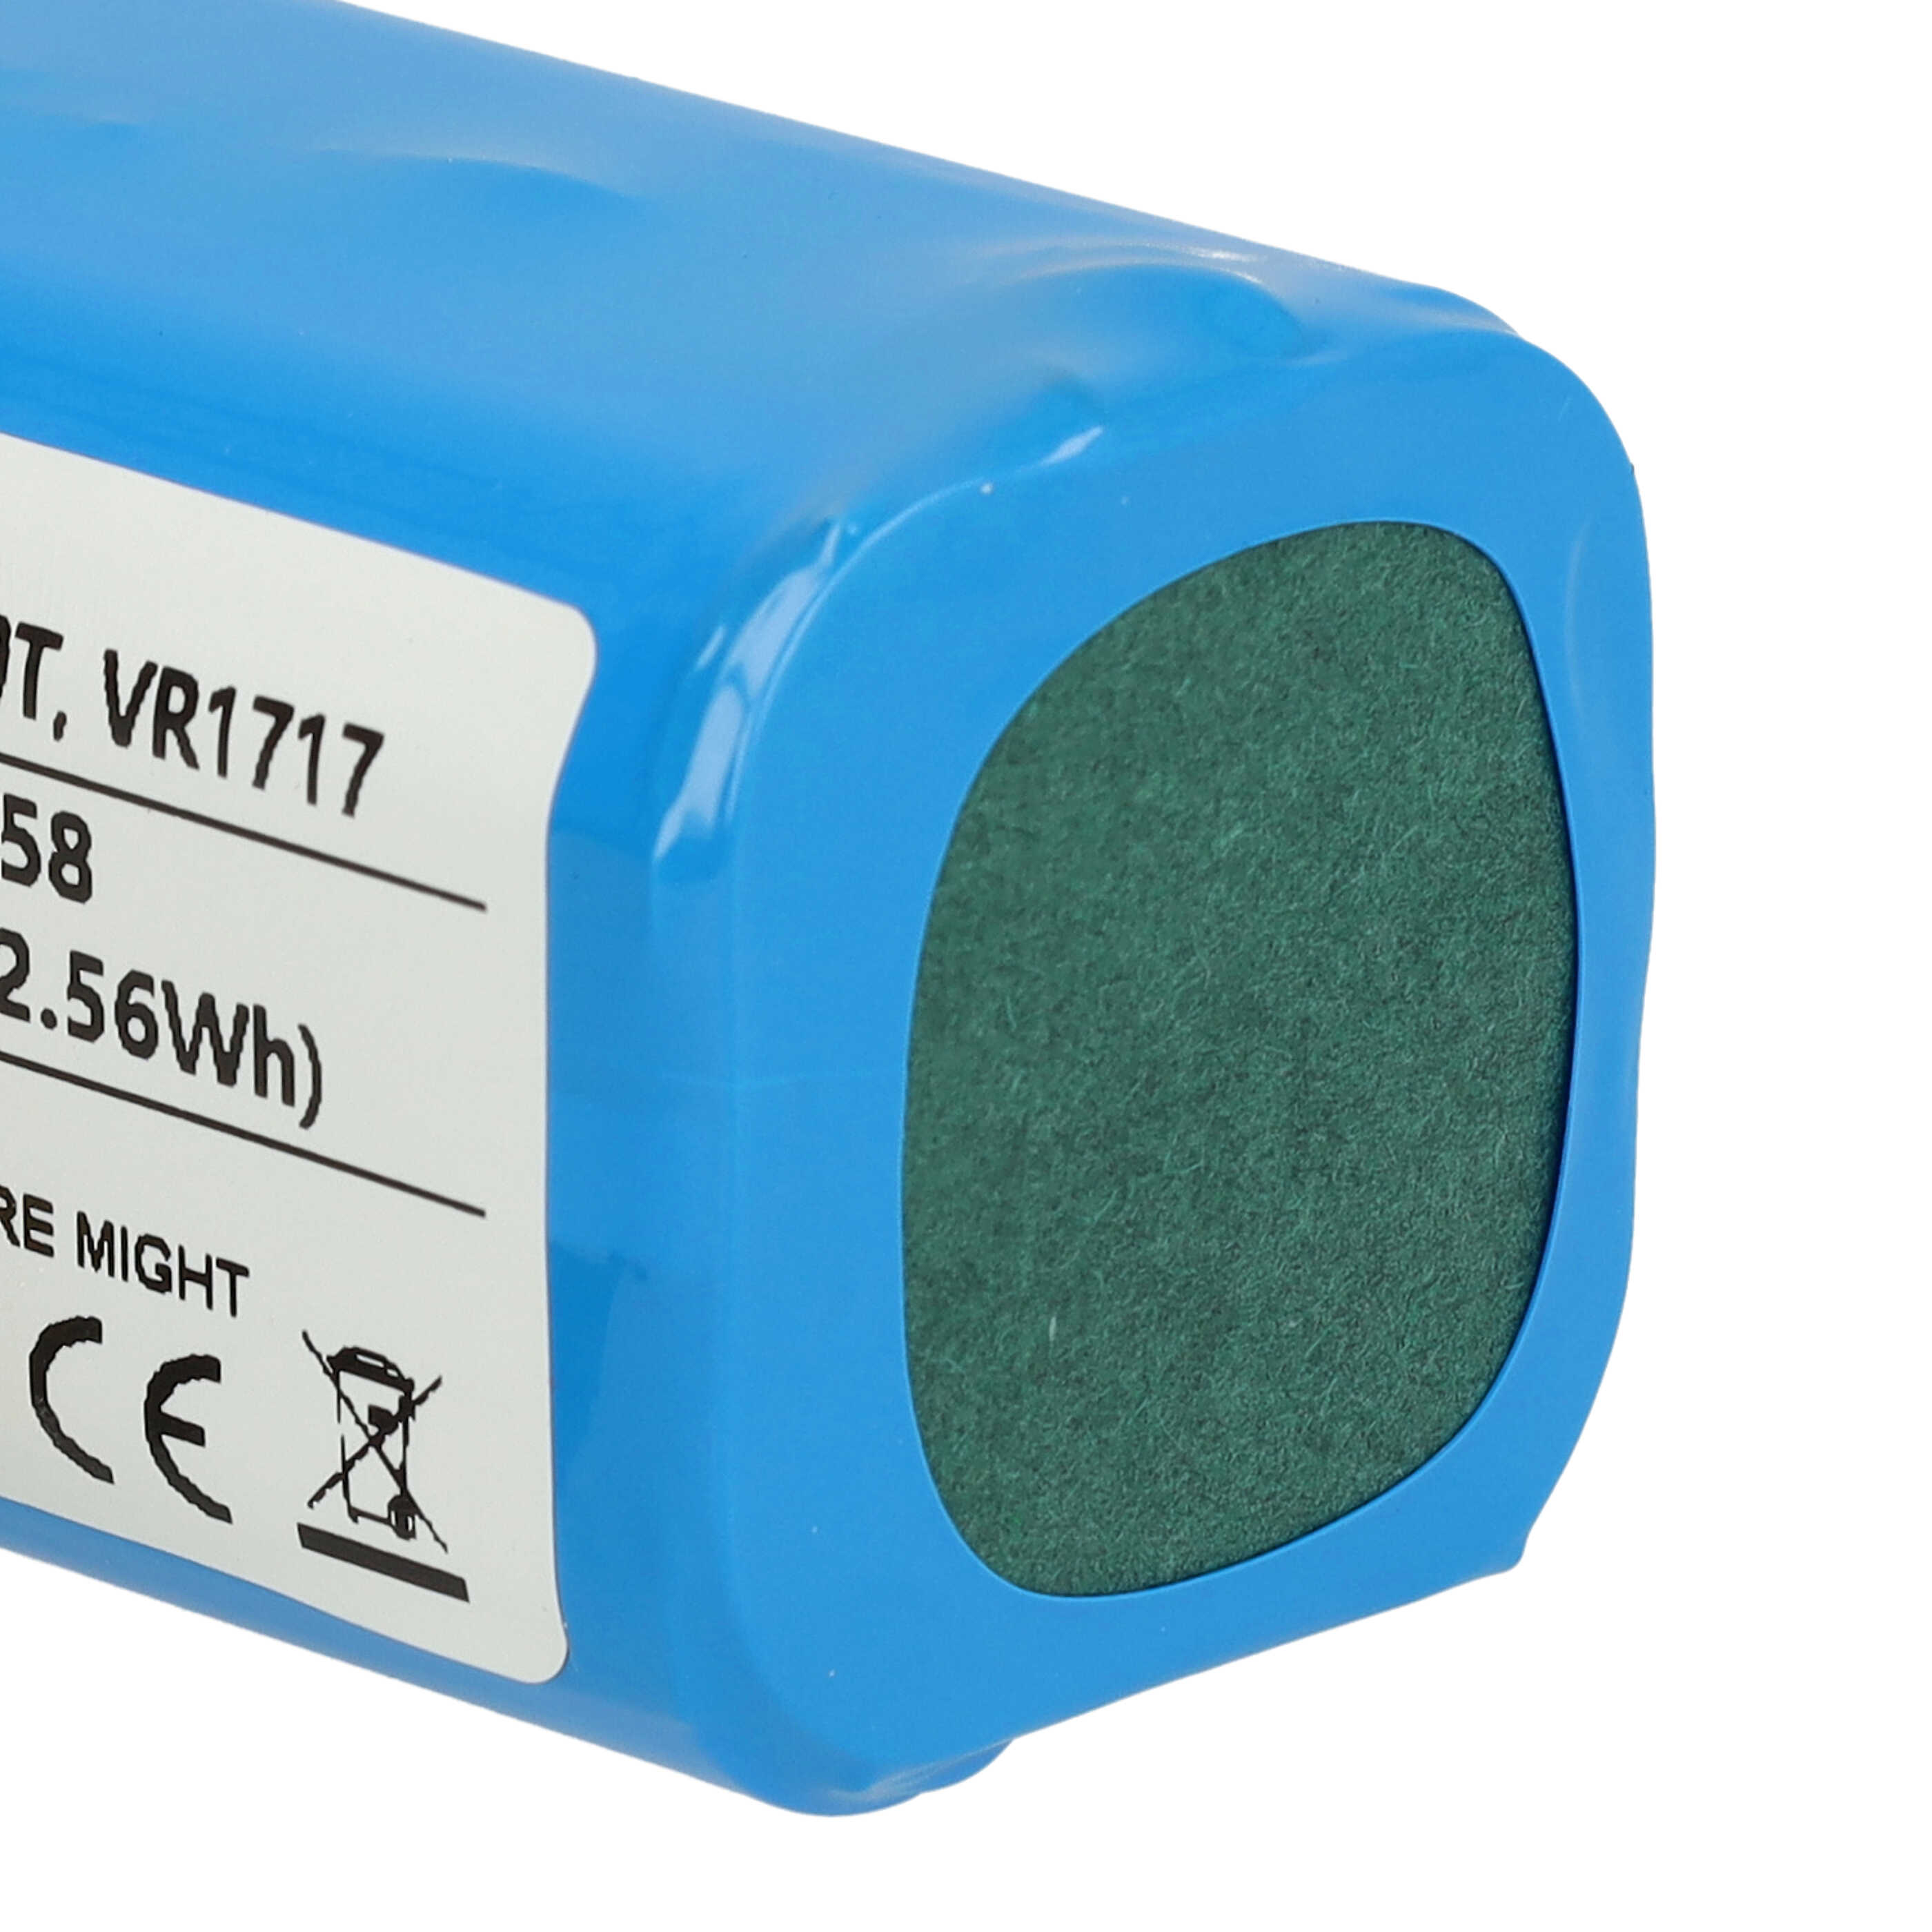 Batterie remplace Proscenic VR1717 pour robot aspirateur - 2200mAh 14,8V Li-ion